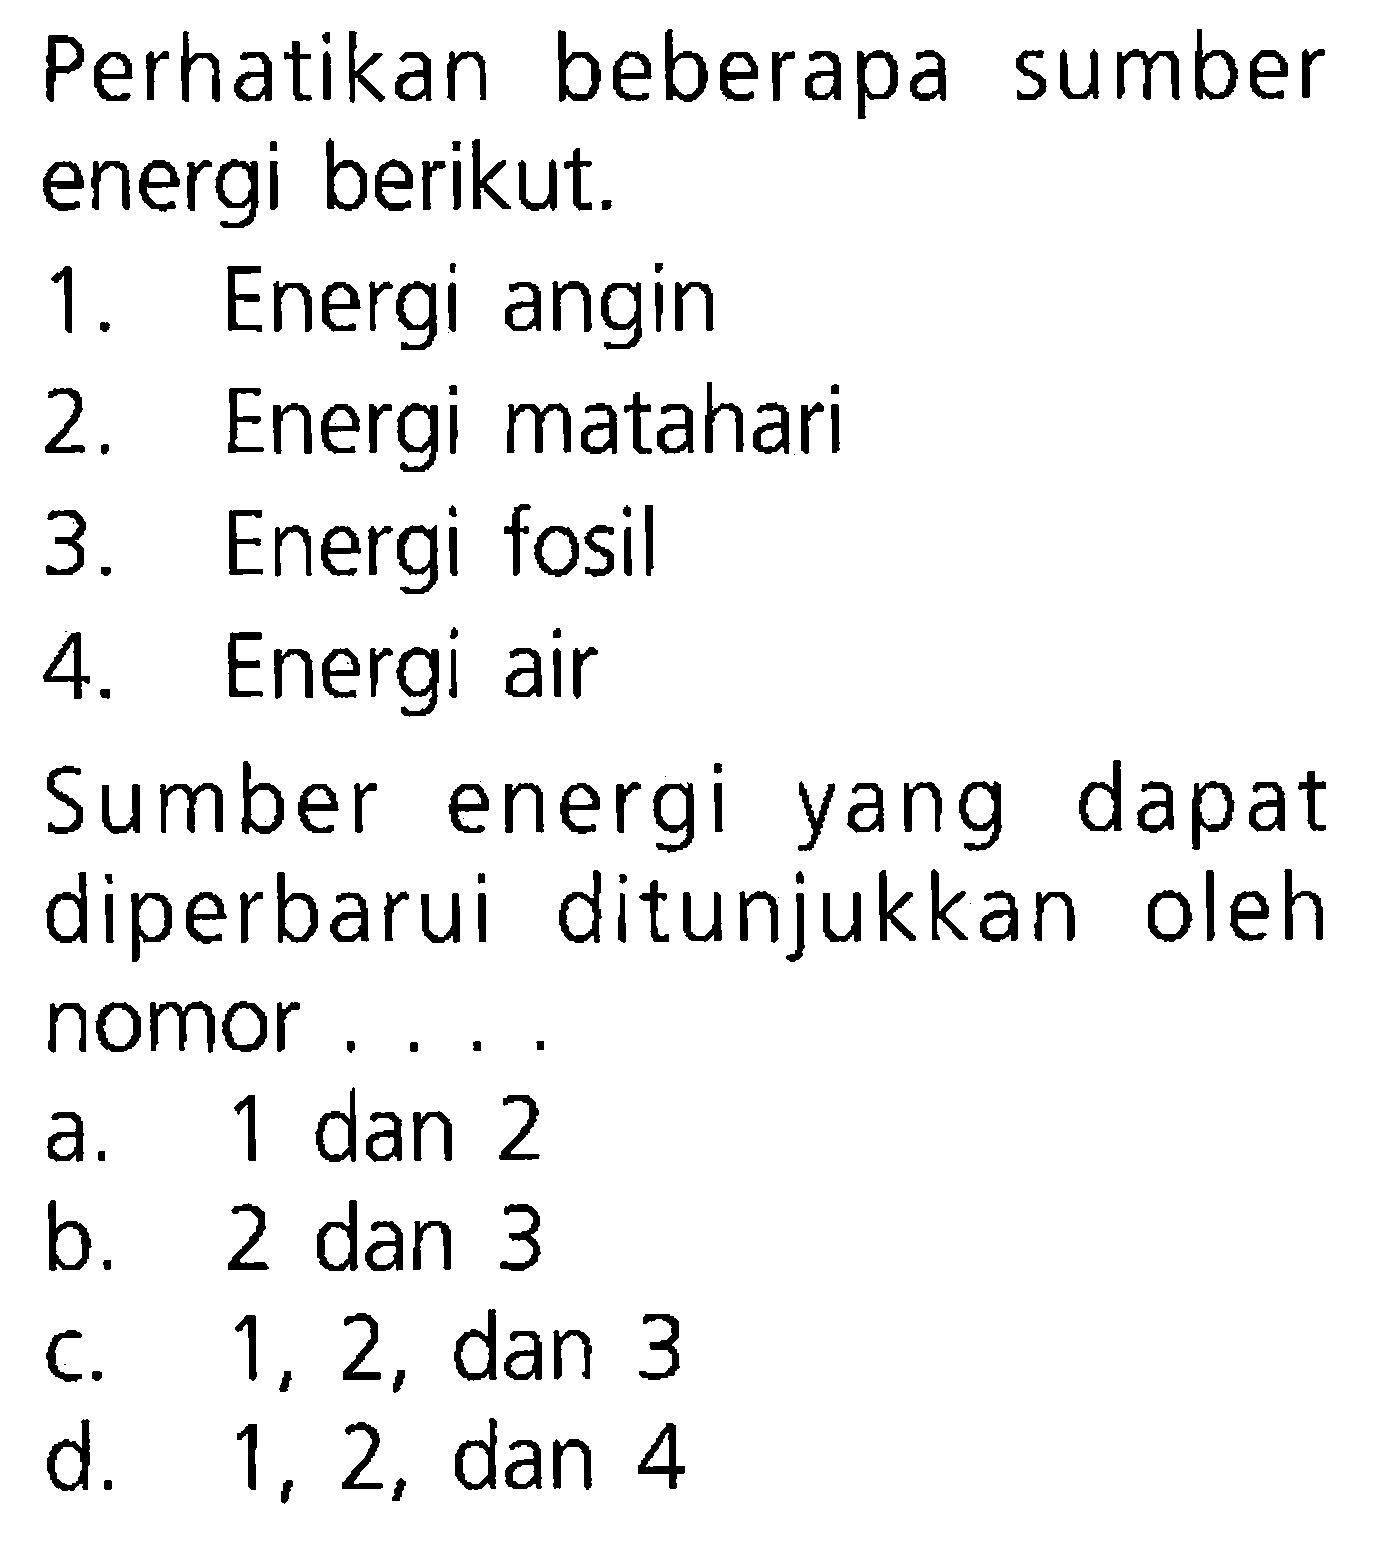 Perhatikan beberapa sumber energi berikut. 1. Energi angin 2. Energi matahari 3. Energi fosil 4. Energi air Sumber energi yang dapat diperbarui ditunjukkan oleh nomor ....